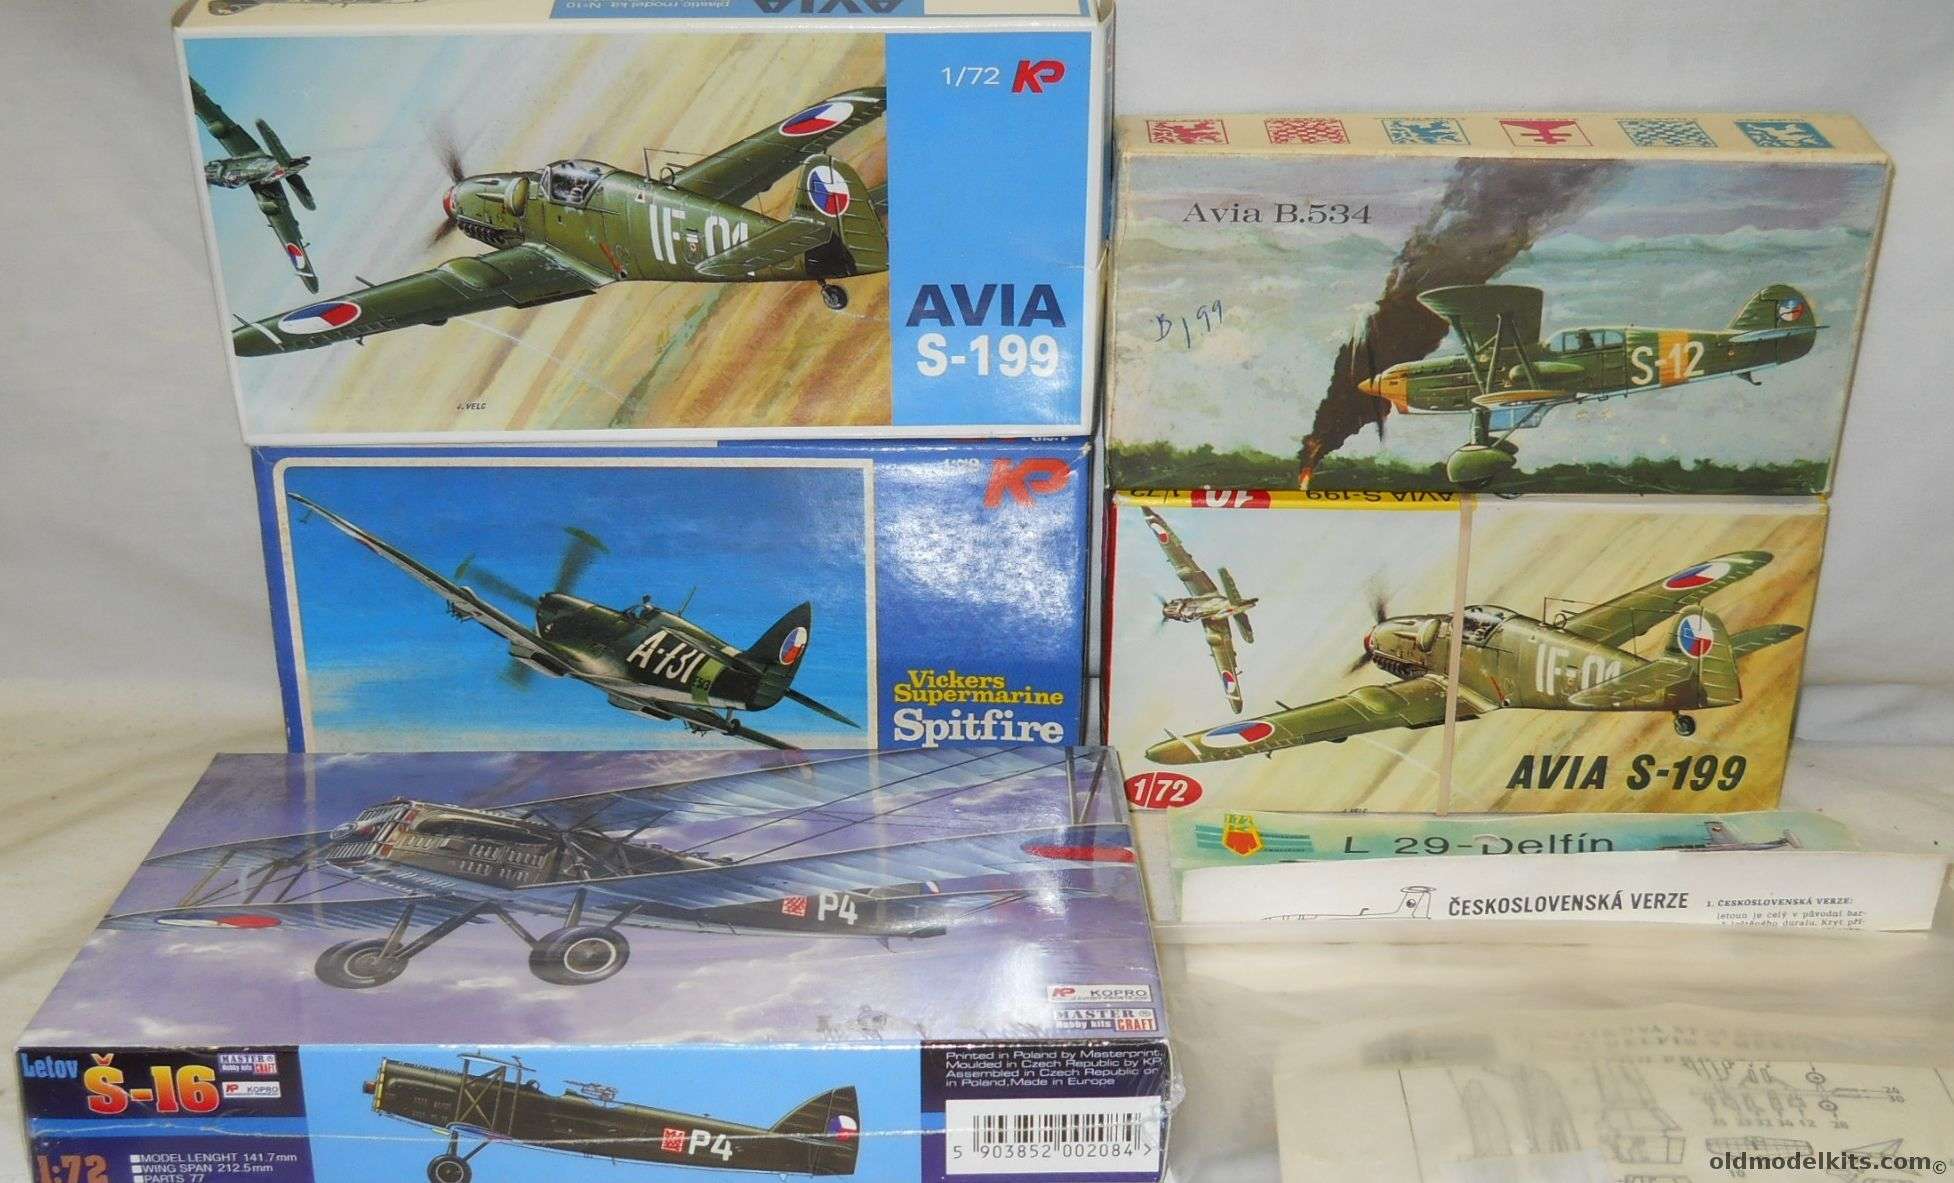 KP 1/72 Avia B-534 / L-29 Delfin / Avia S-199 / Avia S-199 / Spitfire Mk. LF IXE / Letov S-16 plastic model kit